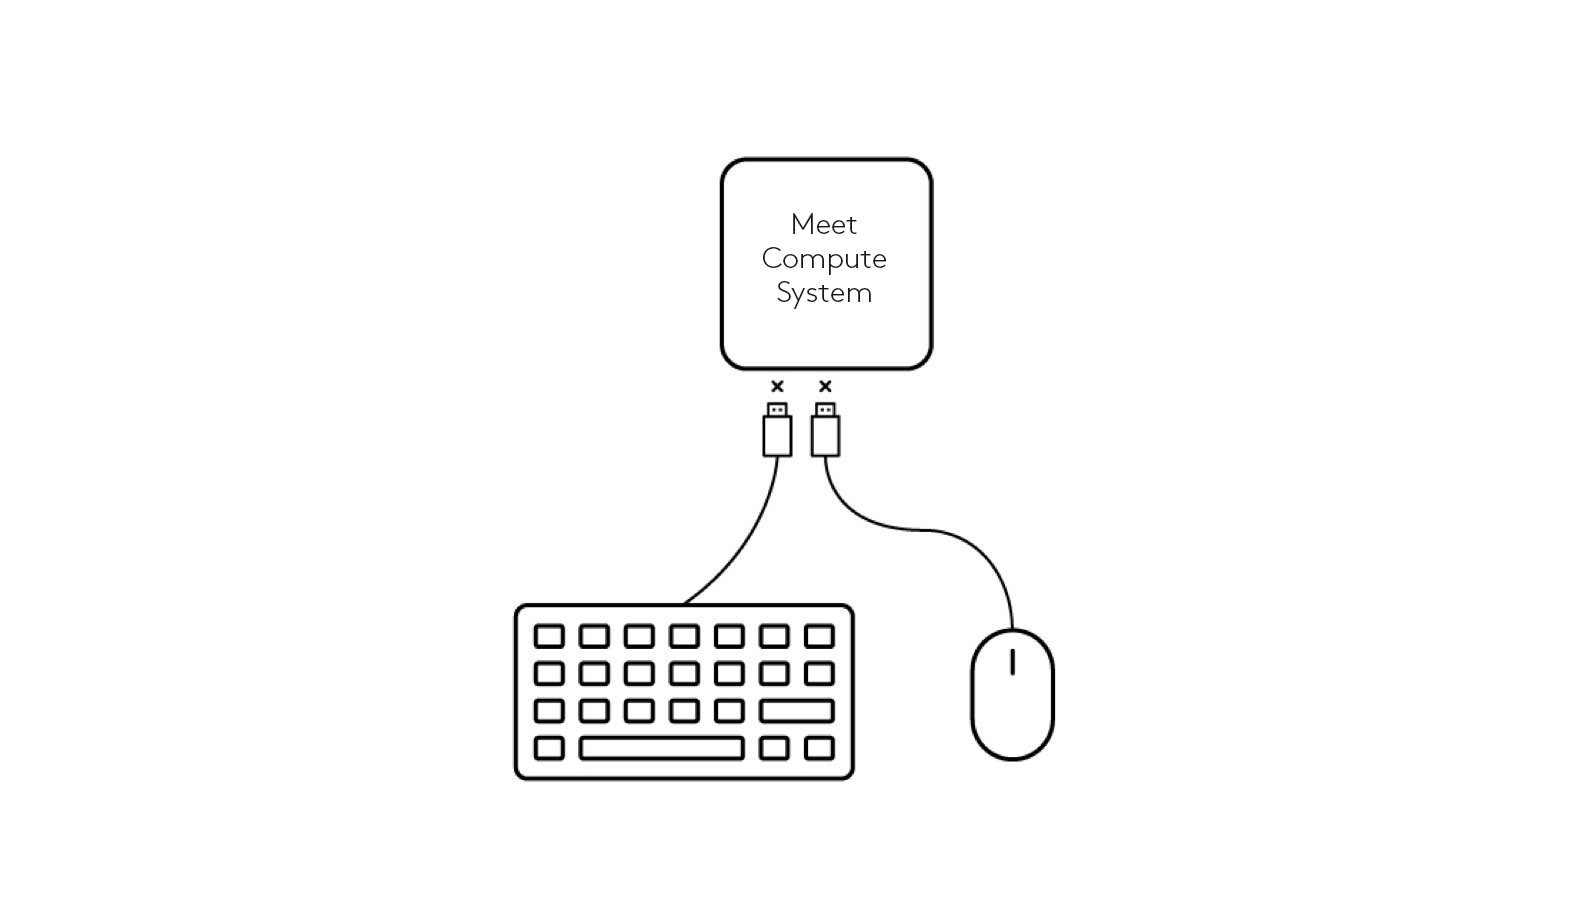 Diagrama de desconexión de teclado y ratón de Meet Compute System